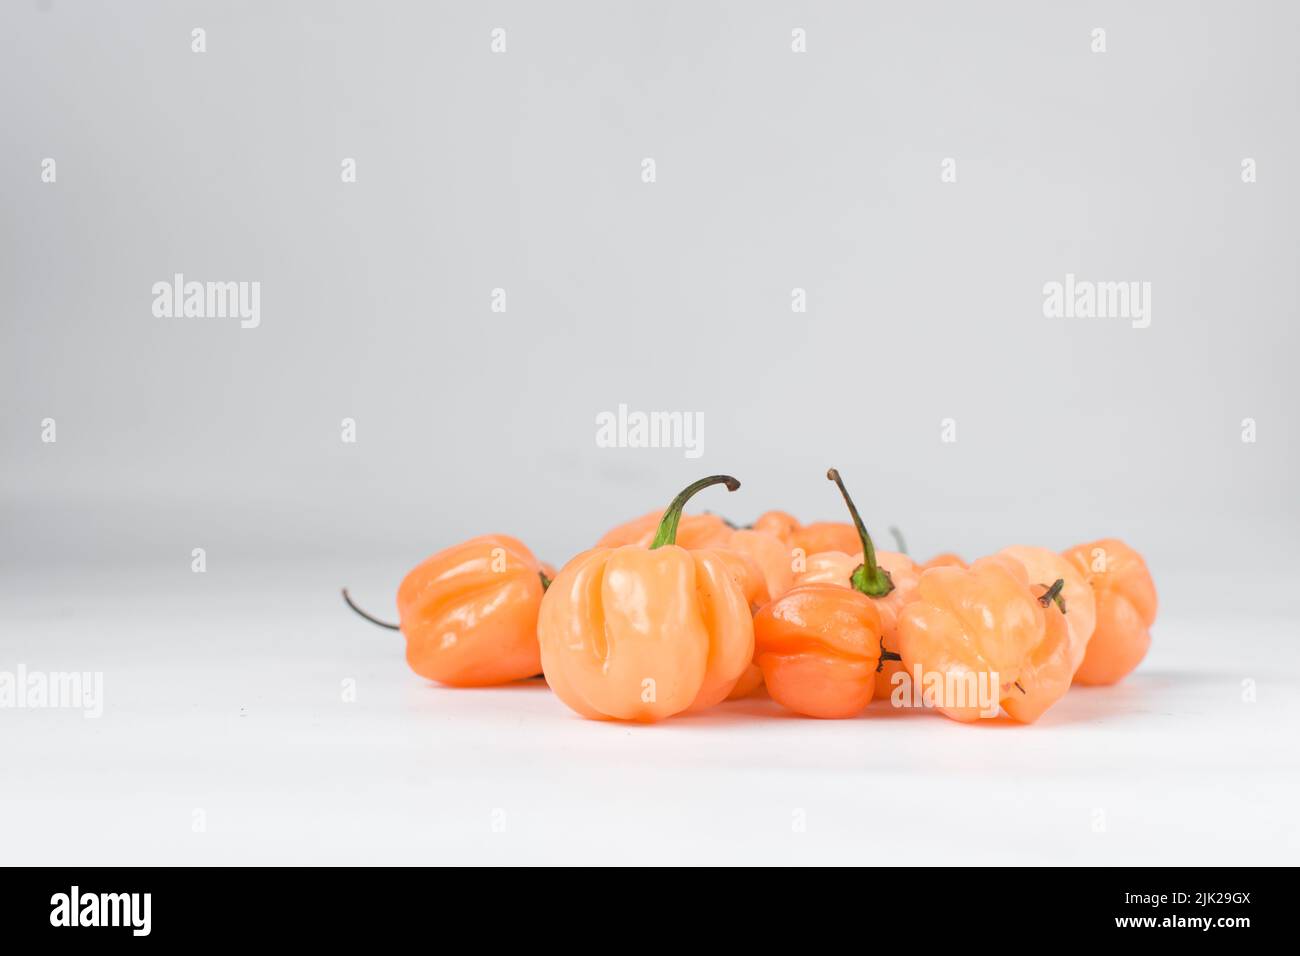 A scotch bonnet pepper with stem on a white background, fresh pepper, orange coral pepper, Nigerian scotch bonnet pepper Stock Photo